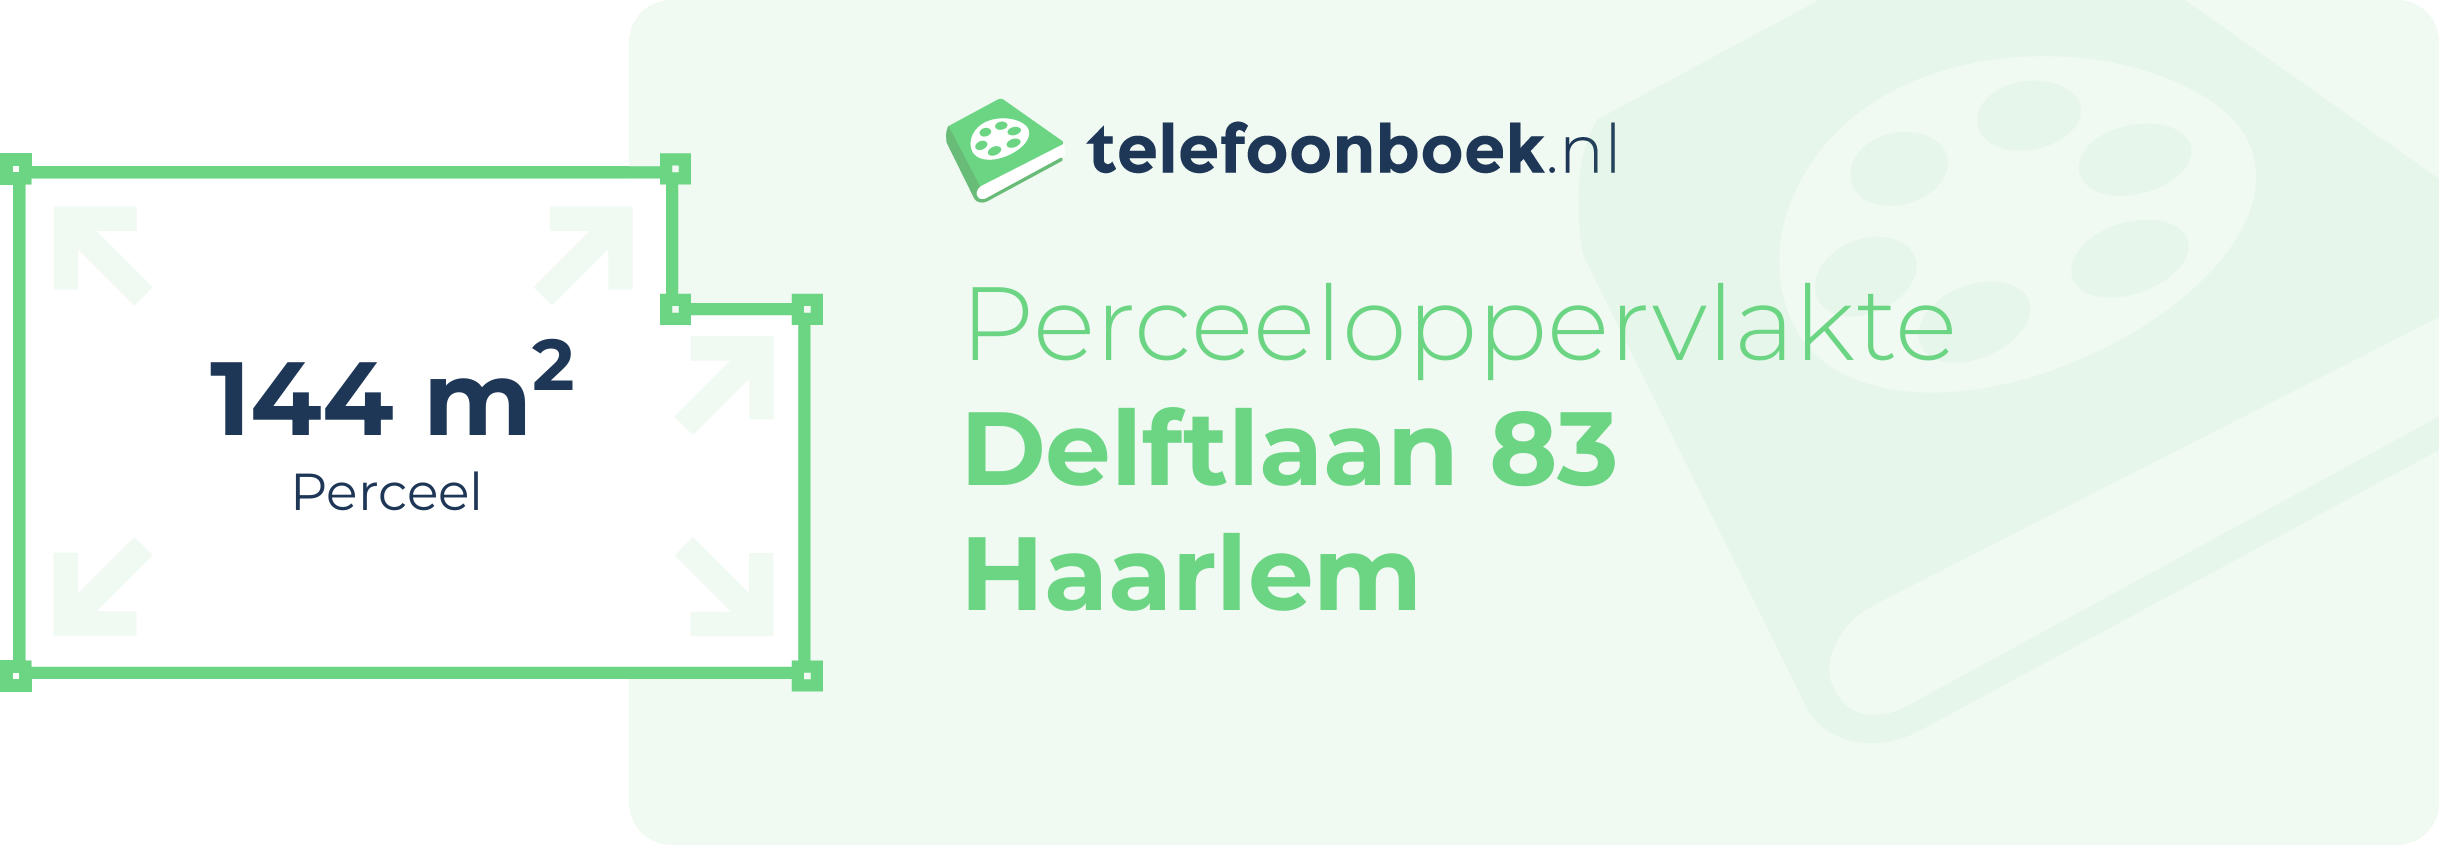 Perceeloppervlakte Delftlaan 83 Haarlem